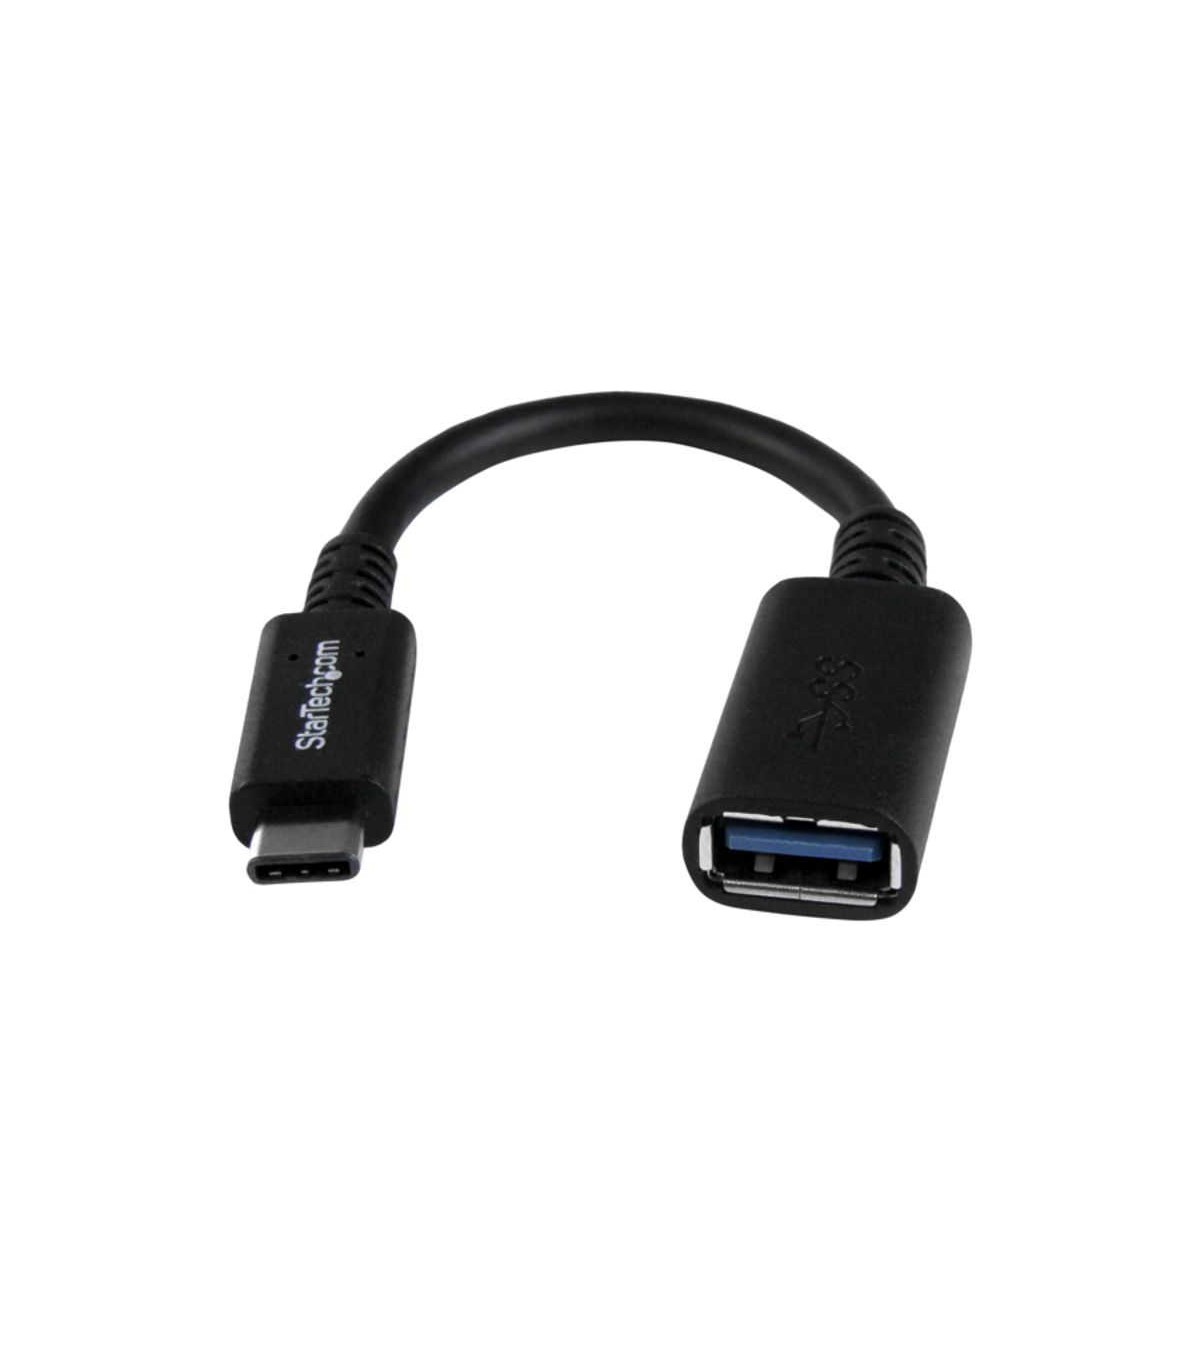 USB31CAADP CABLE ADAPTADOR USB-C A USB-A 3.1 - M/H - 15 CM - Accesorios -  Camaras de Seguridad Y Control de Acceso